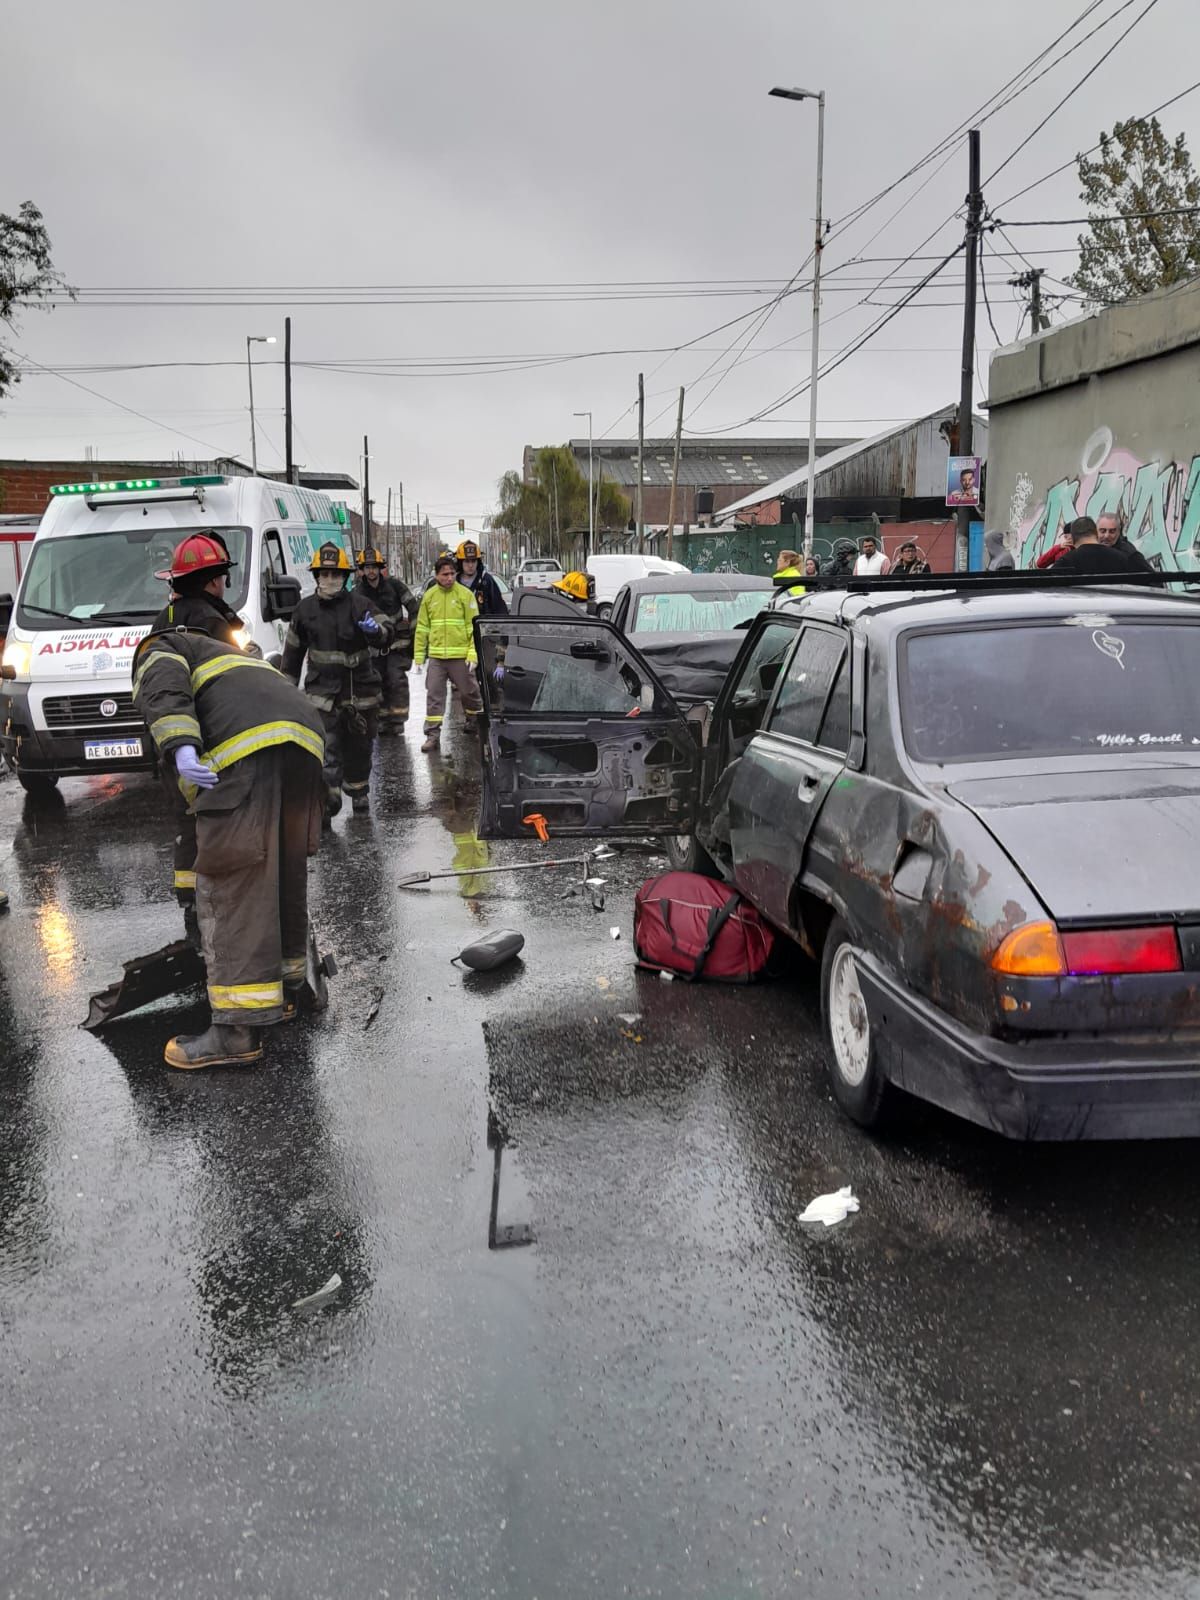 Grave accidente de tránsito en Lanús: 2 muertos y 3 heridos